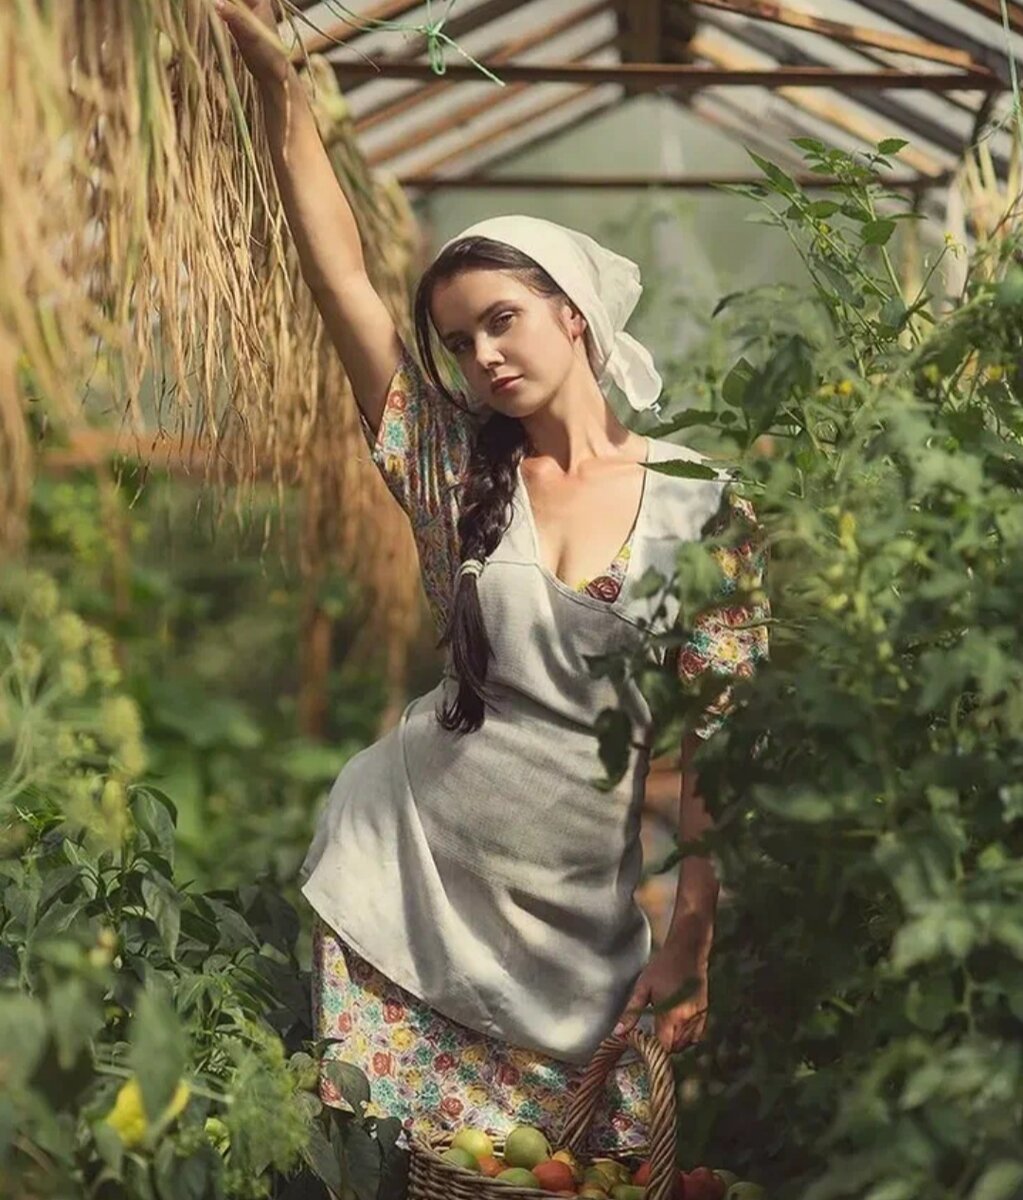 Village woman. Ксюша Егорова фотомодель барышня крестьянка. Фотограф Дэвид Дубницкий.